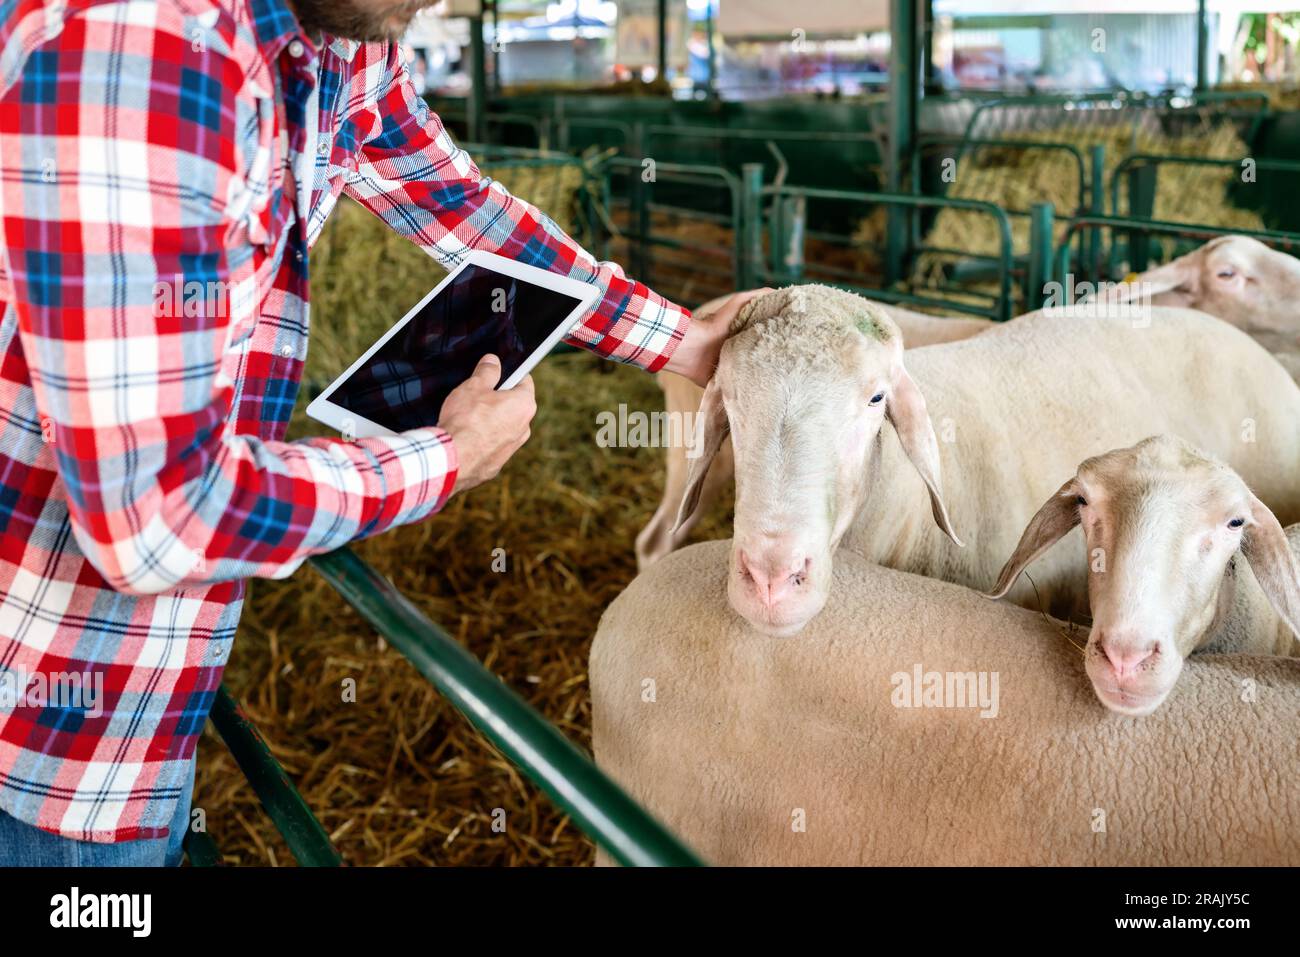 Un agriculteur a patrouillé les moutons dans les enclos à la ferme d'élevage, l'homme inspecte visuellement les animaux à la ferme d'élevage à l'aide d'un comprimé numérique. Banque D'Images